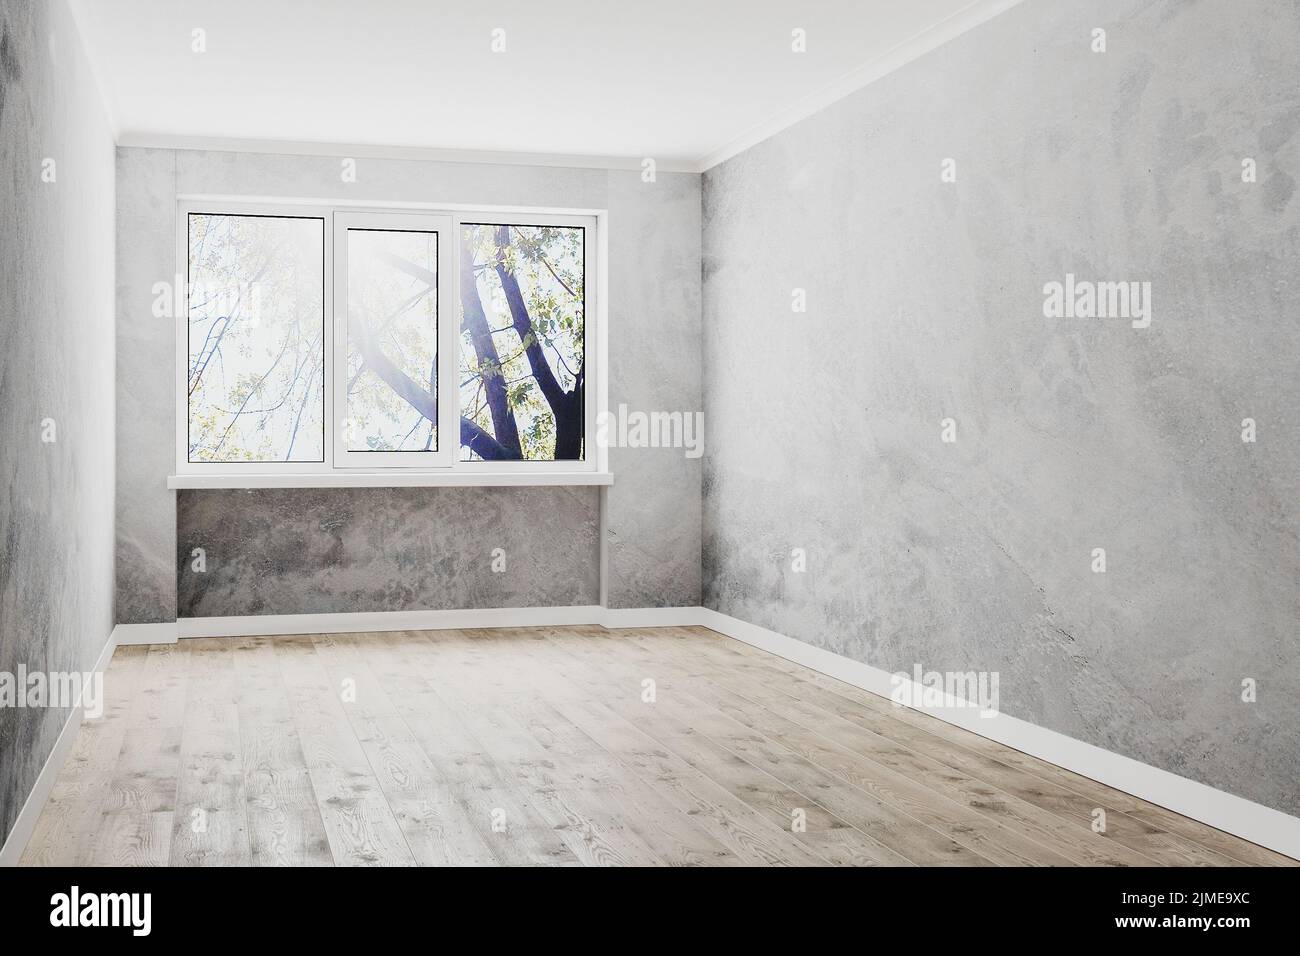 Chambre vide avec fenêtre, murs en plâtre décoratifs vides et plancher en bois, plafond blanc, murs vides, 3D rendu Banque D'Images